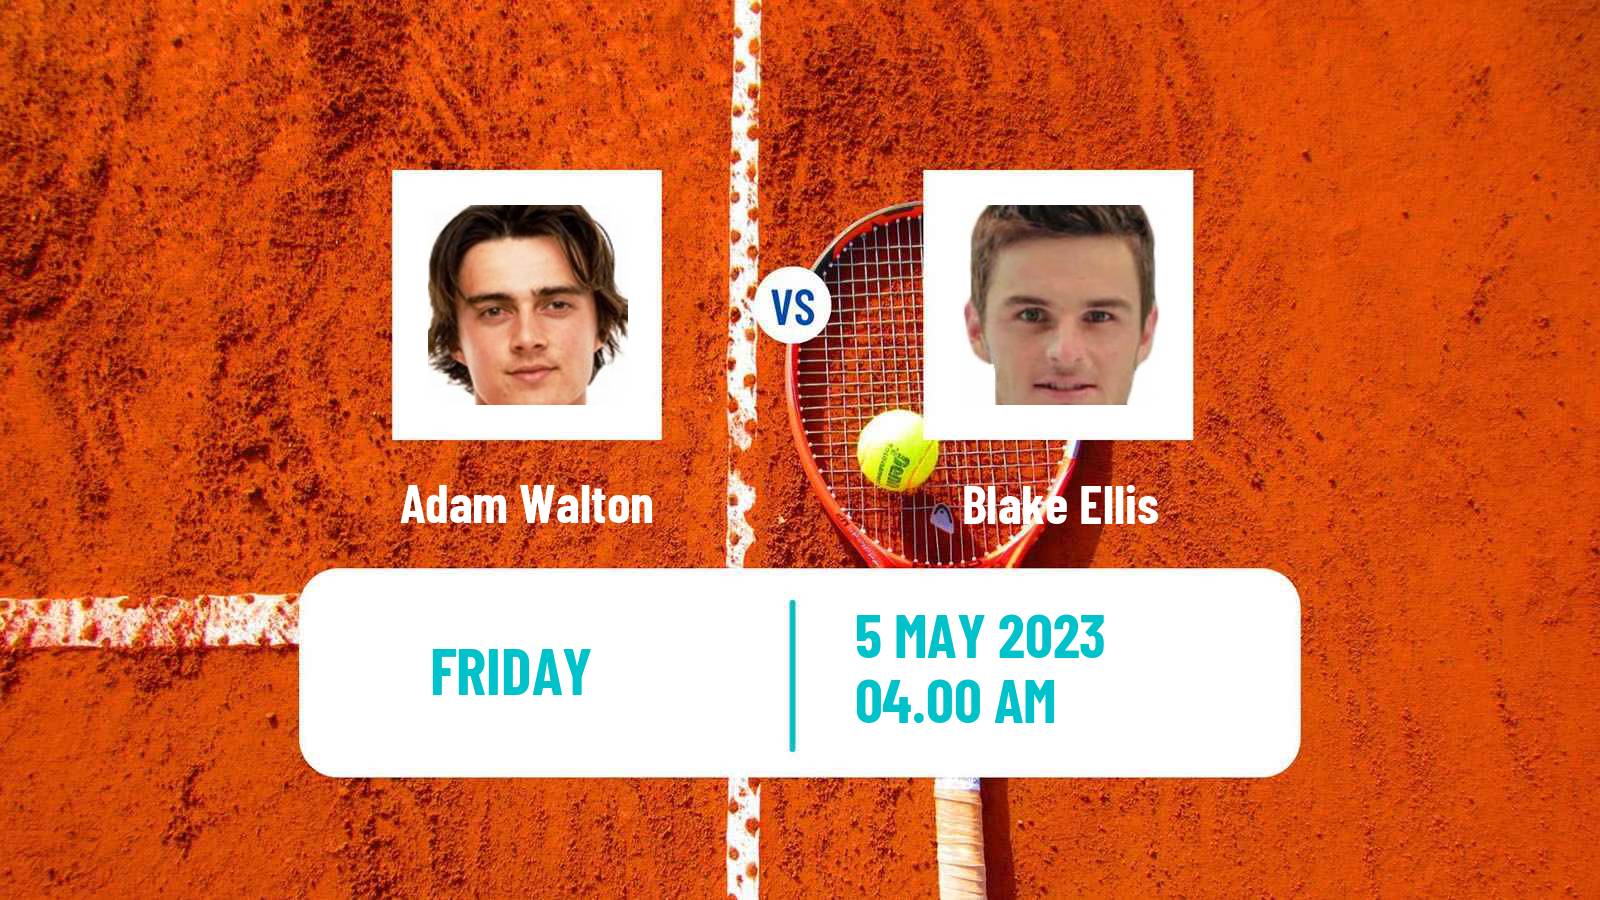 Tennis ITF Tournaments Adam Walton - Blake Ellis